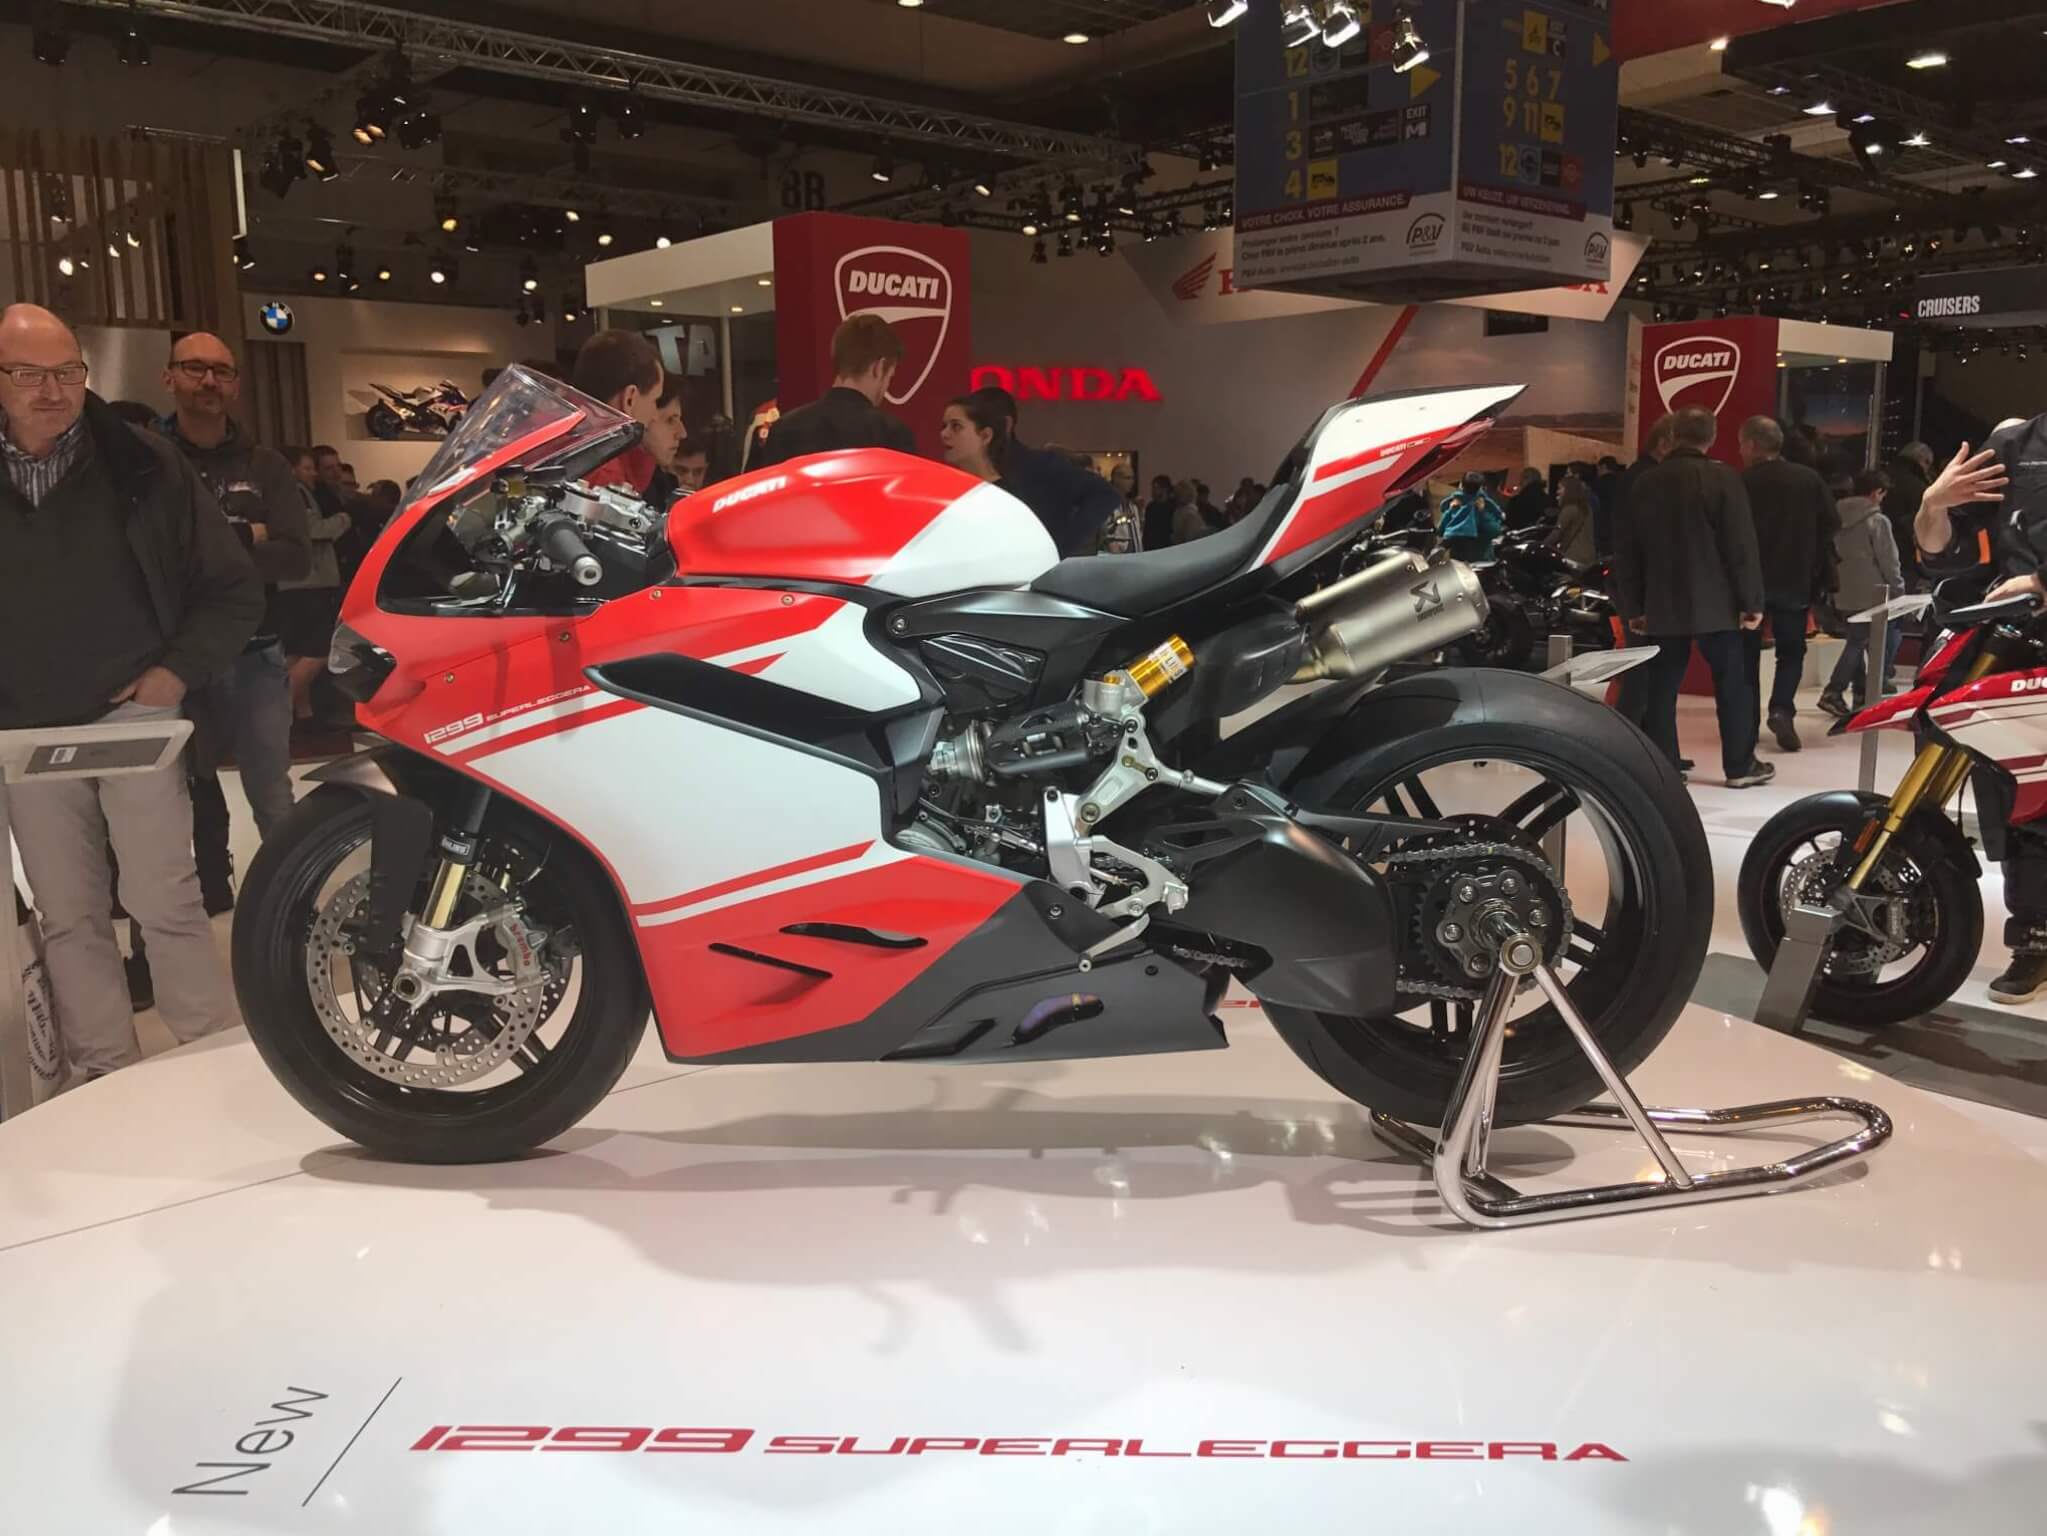 Ducati 1299 Superleggera 2017